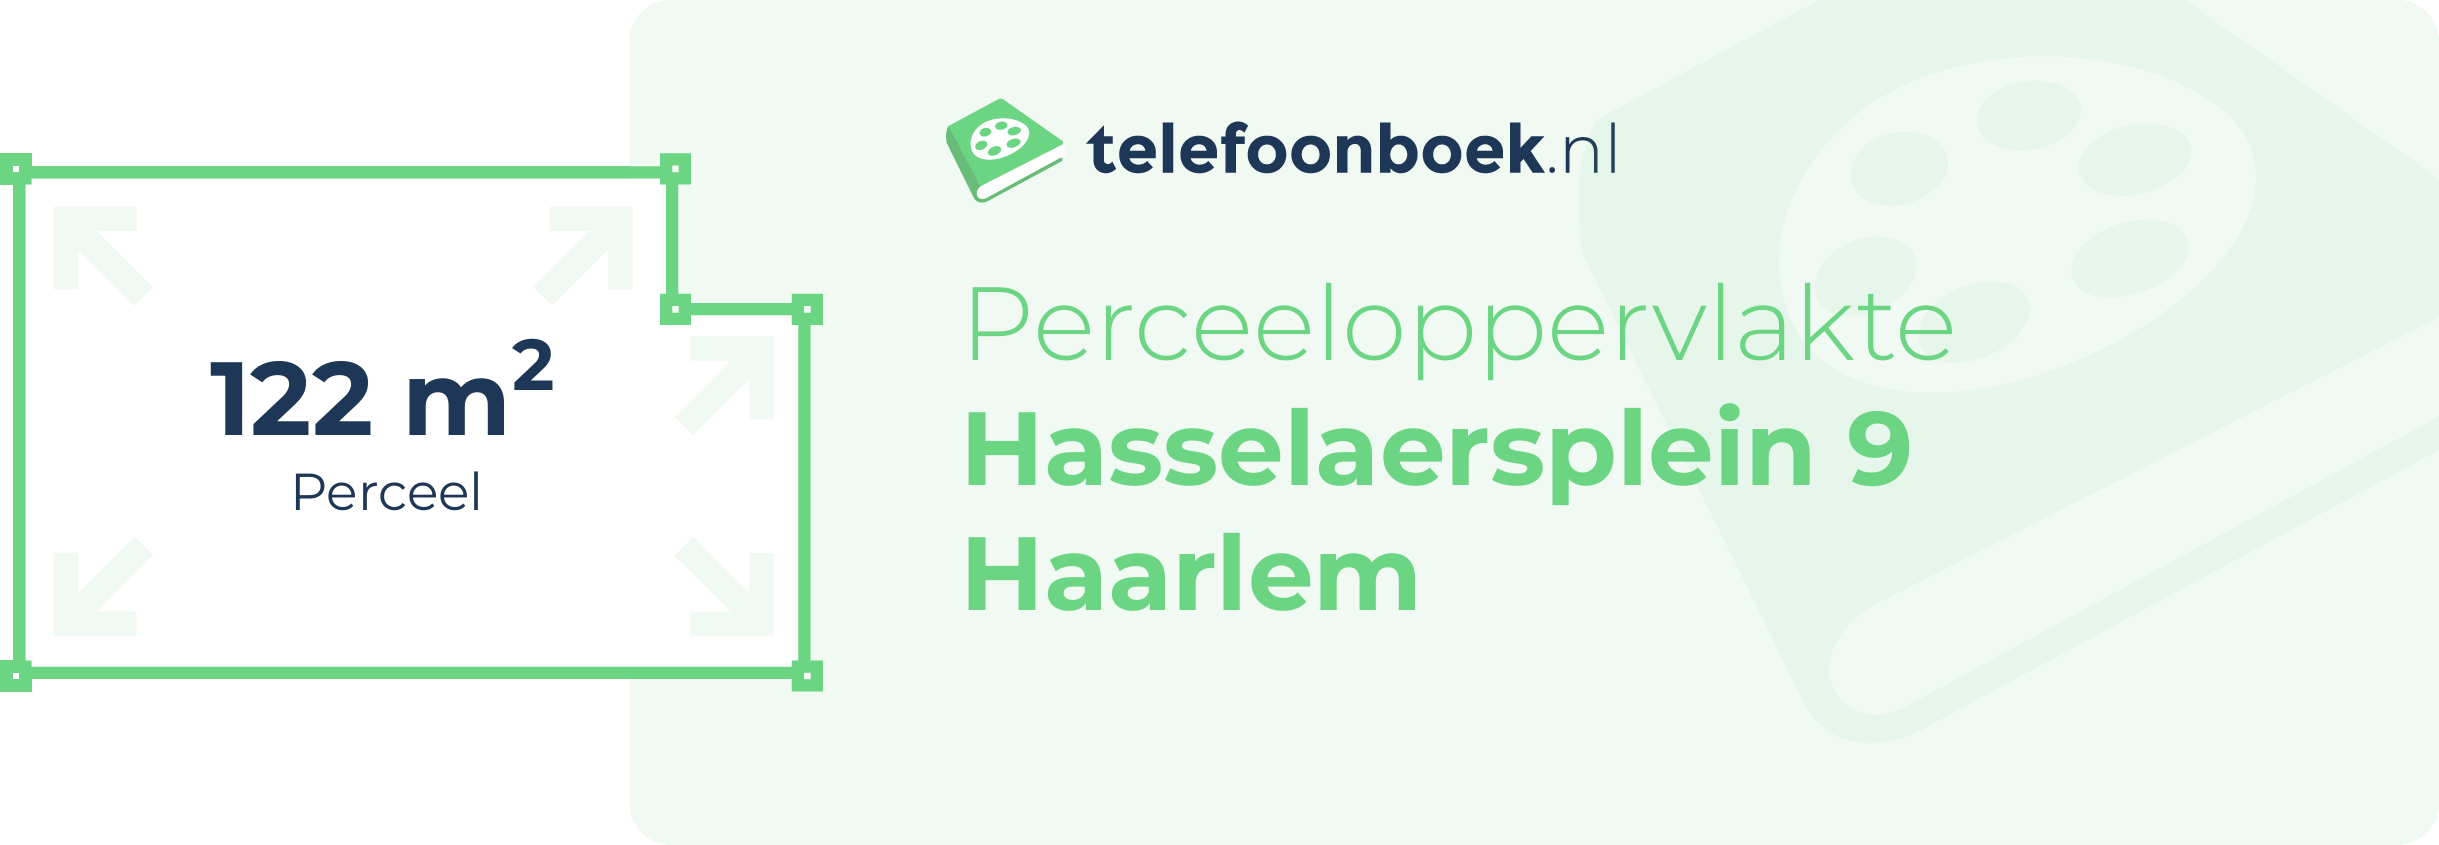 Perceeloppervlakte Hasselaersplein 9 Haarlem